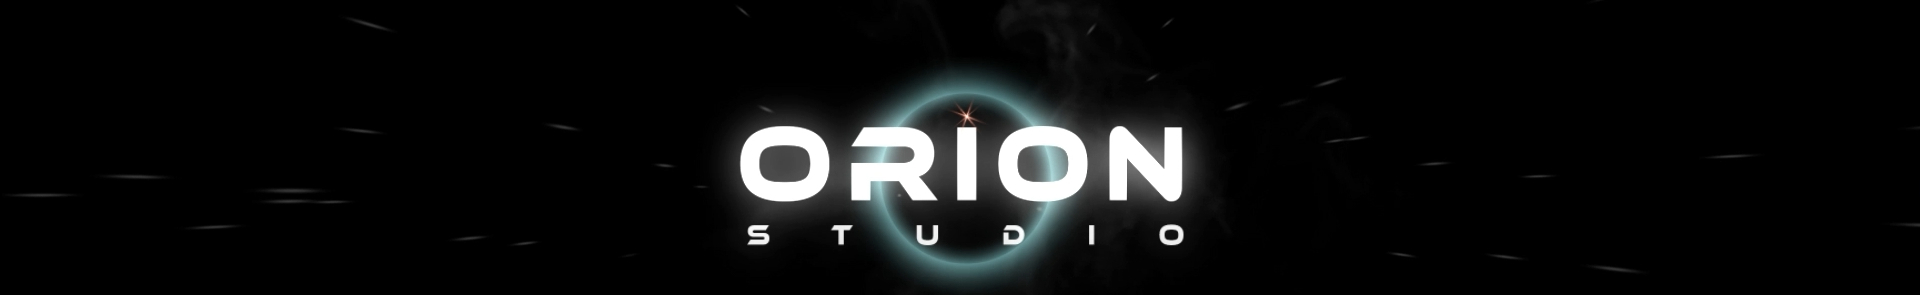 Orion Studio's profile banner